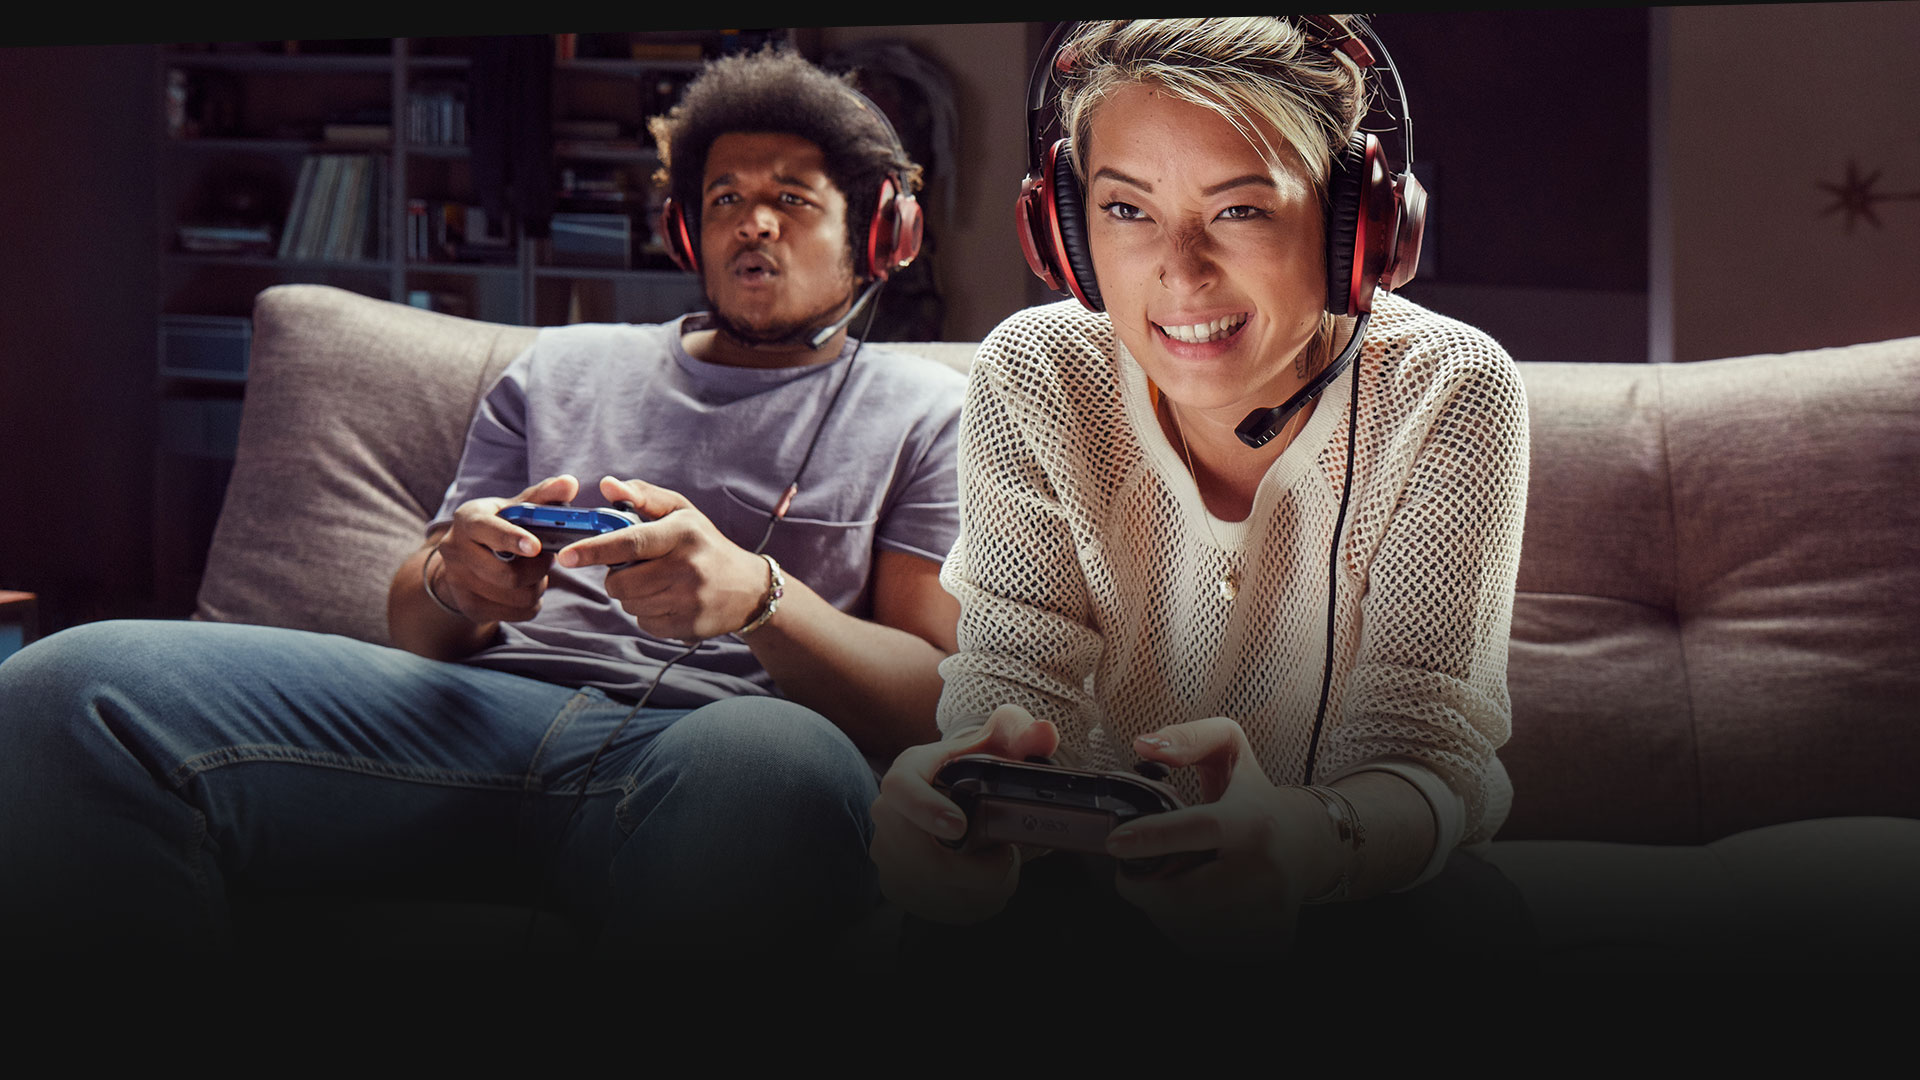 Δύο παίκτες με ακουστικά στο κεφάλι παίζουν στο Xbox One καθισμένοι σε καναπέ